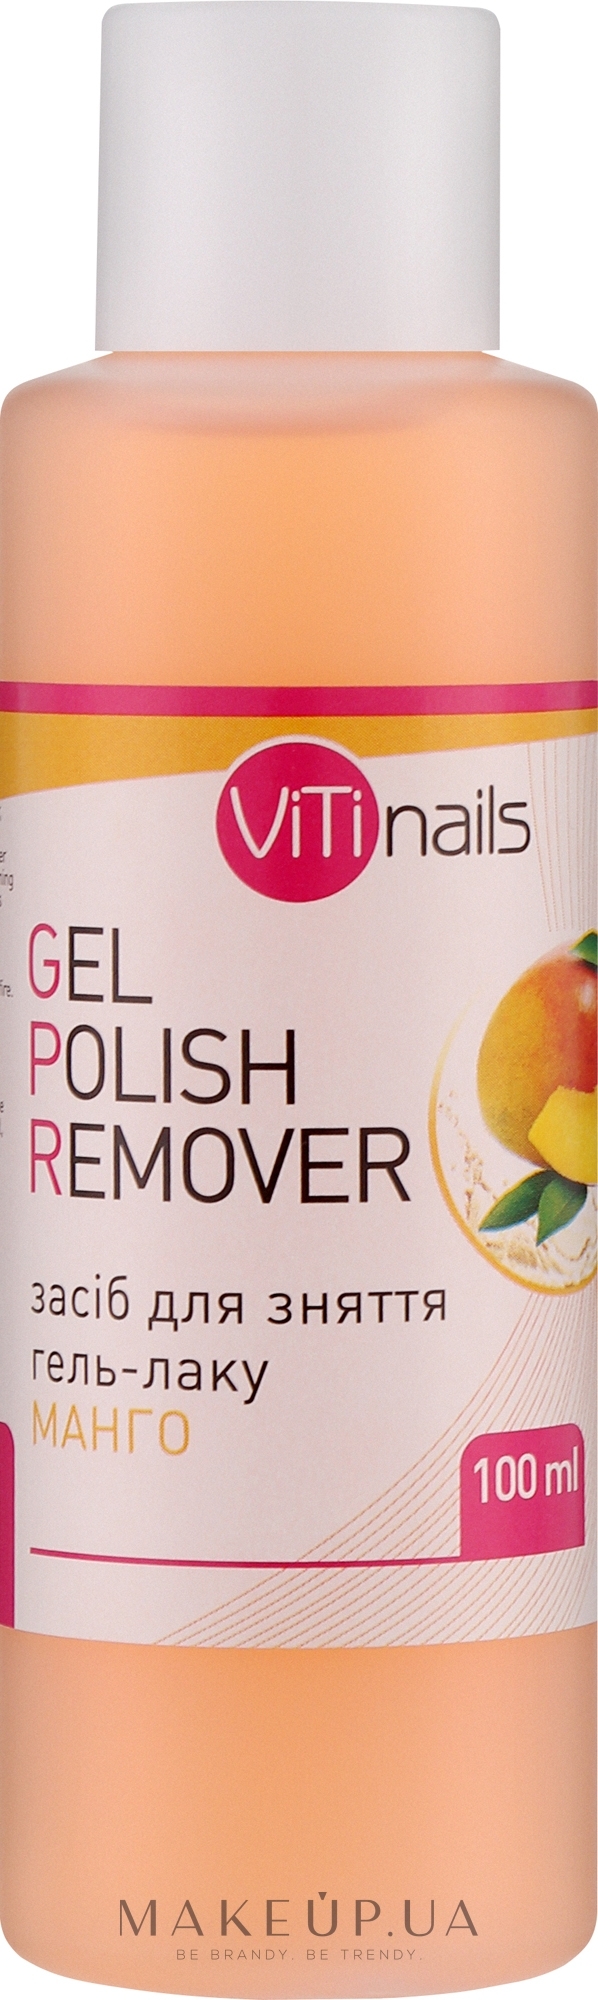 Рідина для зняття гель-лаку з екстрактом манго - ViTinails Gel Polish Remover — фото 100ml